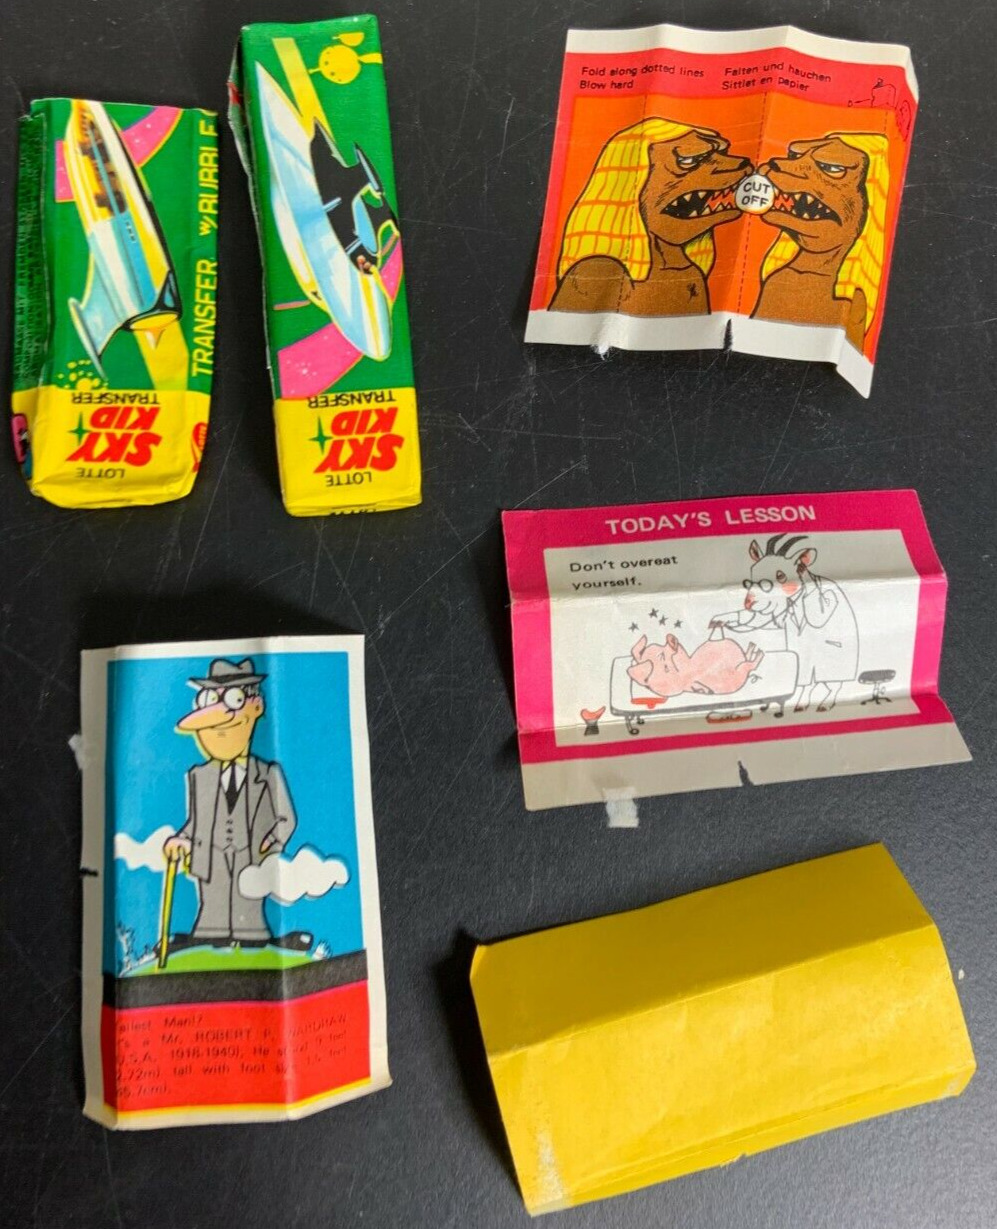 Lotte Sky kid Bubble Gum Japan 1960s Lot Pack w transfers Vintage